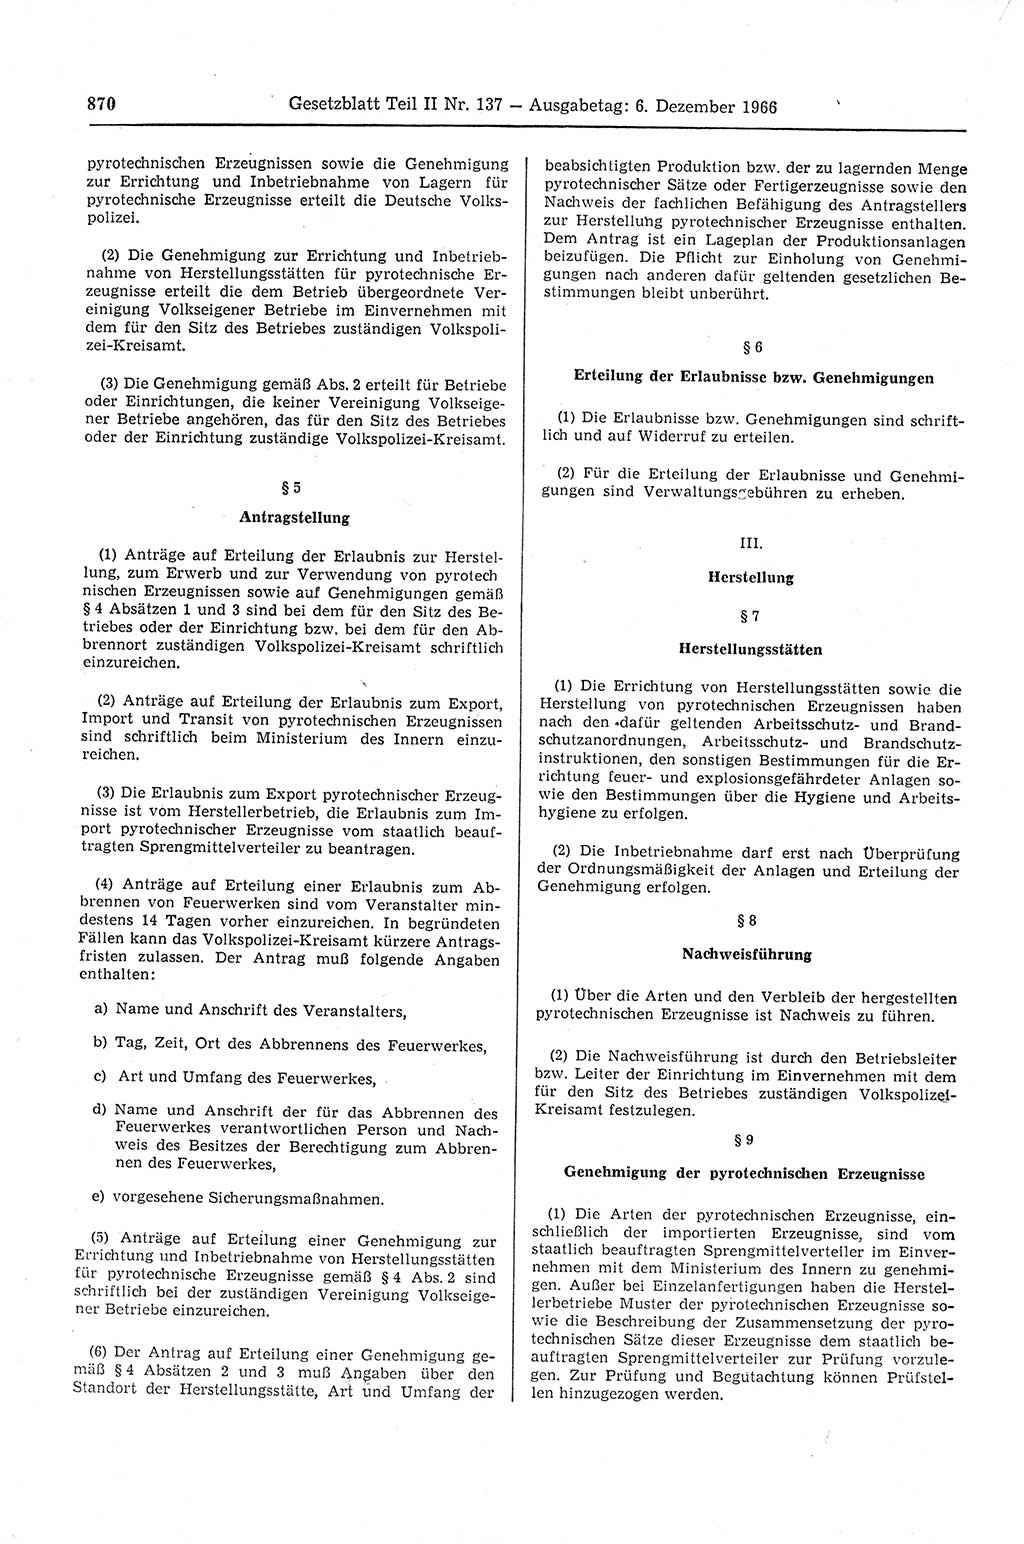 Gesetzblatt (GBl.) der Deutschen Demokratischen Republik (DDR) Teil ⅠⅠ 1966, Seite 870 (GBl. DDR ⅠⅠ 1966, S. 870)